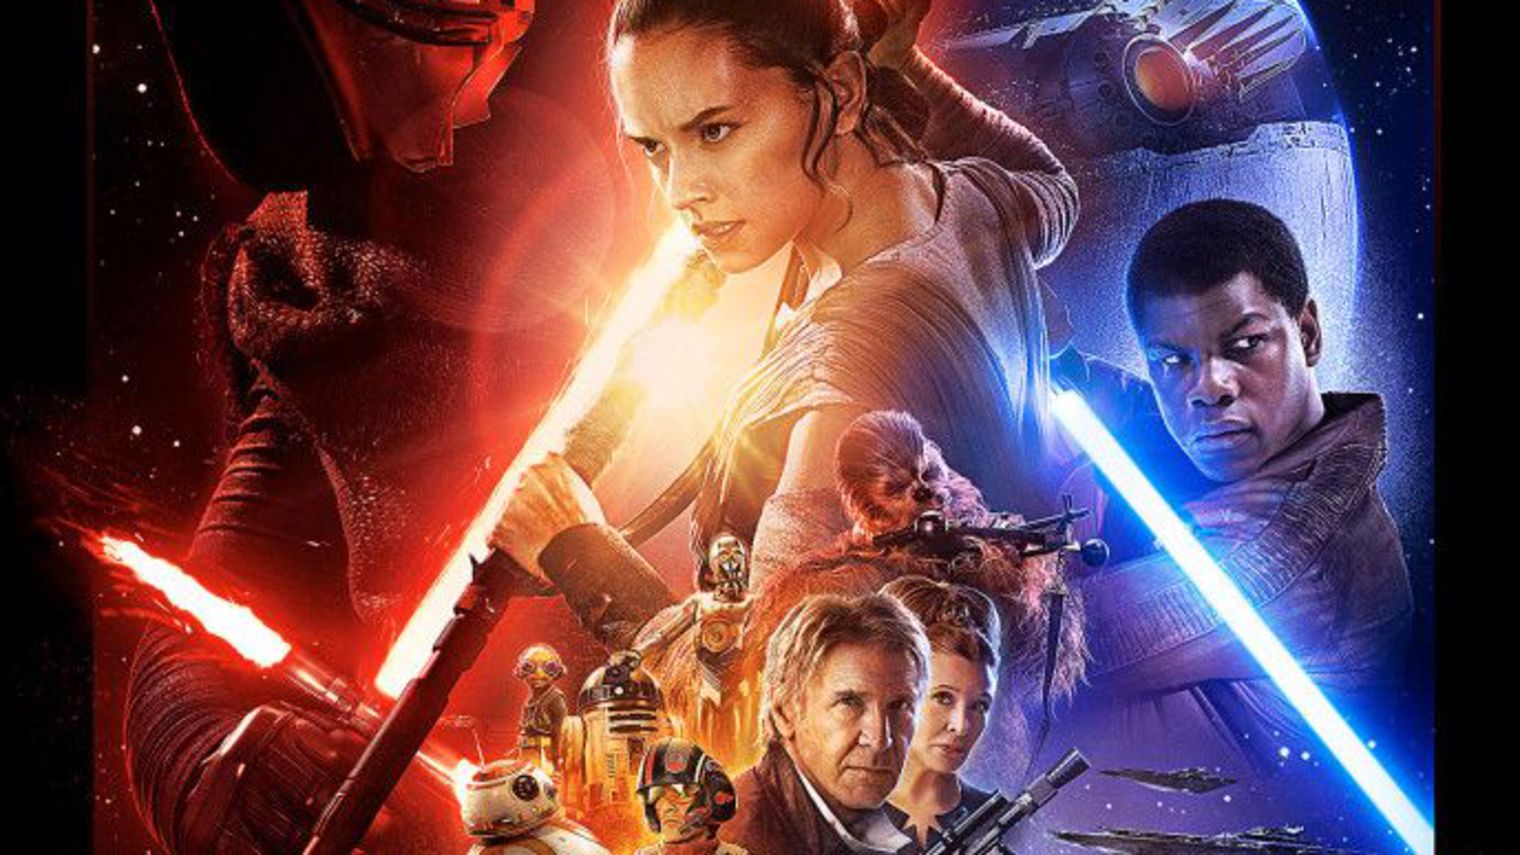 Star wars : Le réveil de la force en avant-première vendredi